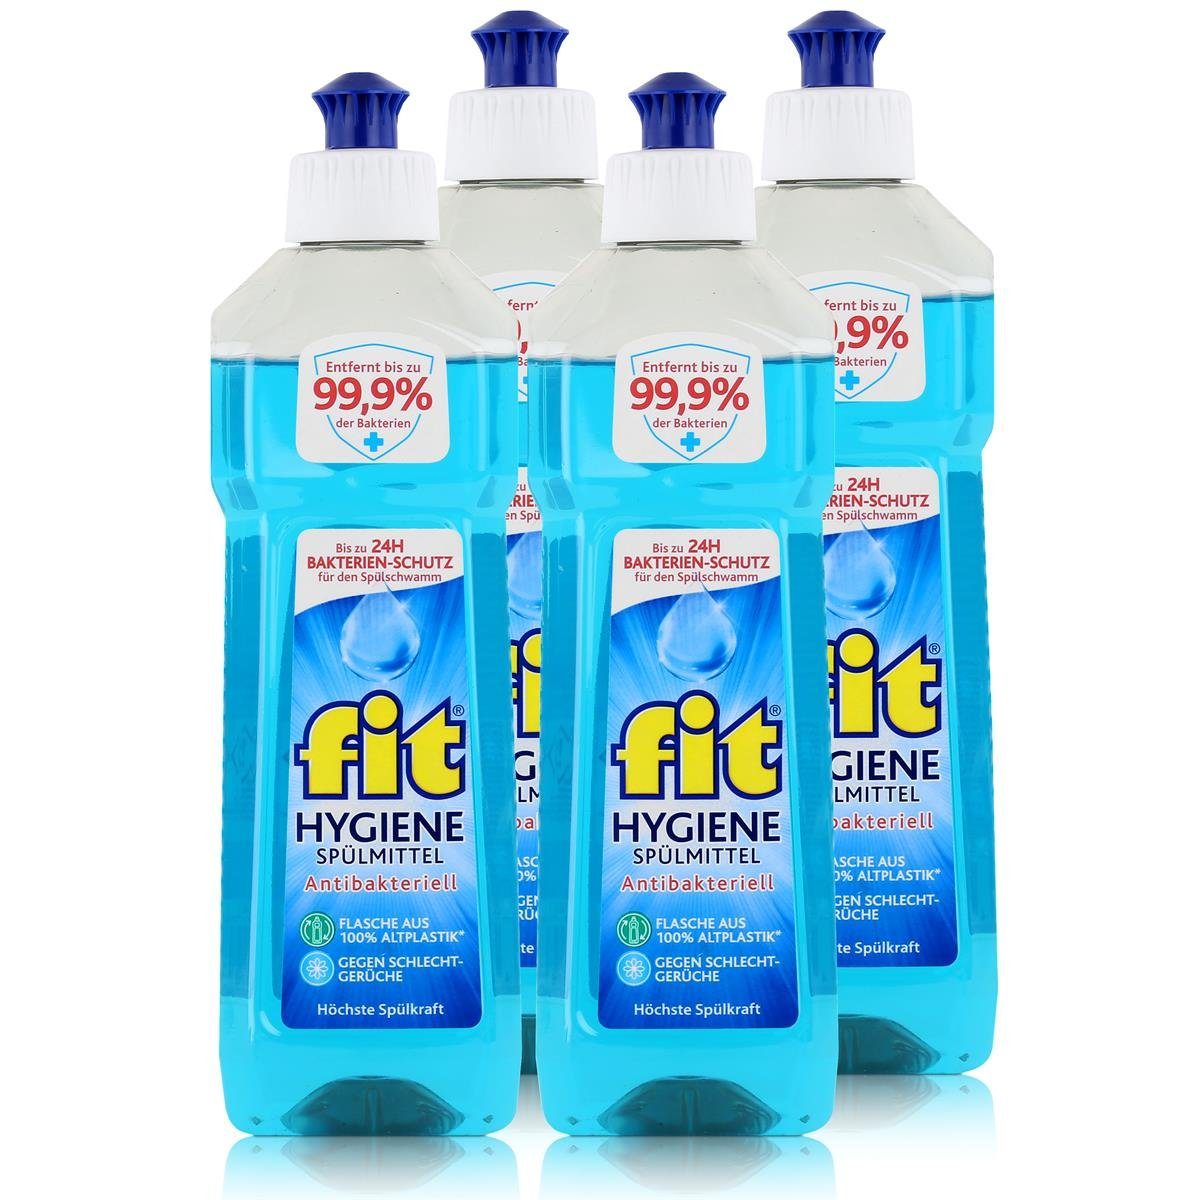 FIT fit Spülmittel Hygiene Anti. Höchste - 500ml Pack) Geschirrspülmittel Spülkraft (4er